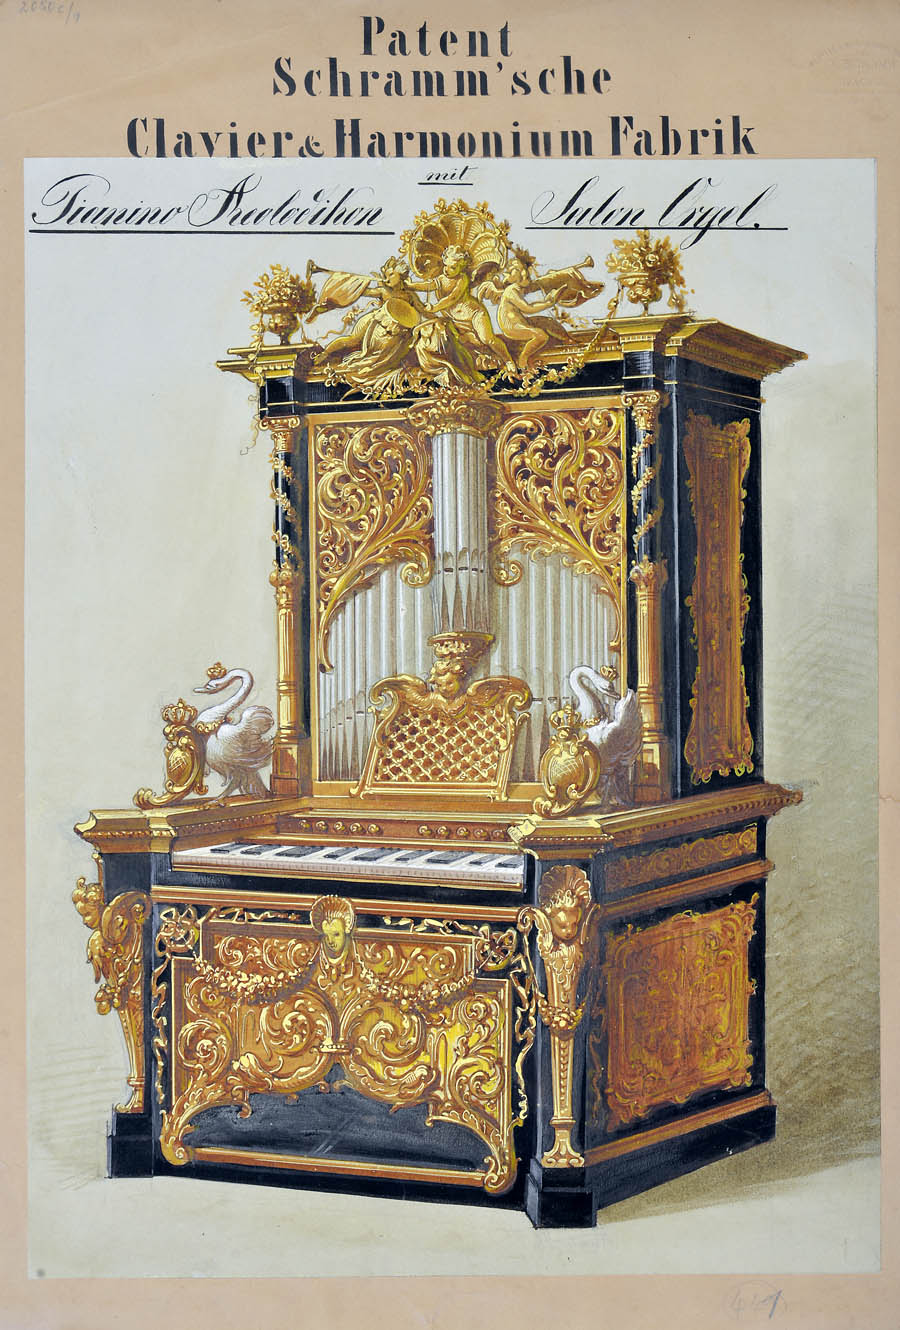 Entwurf eines Pianino-Aedolikons der Schramm’schen Clavier&Harmonium Fabrik München